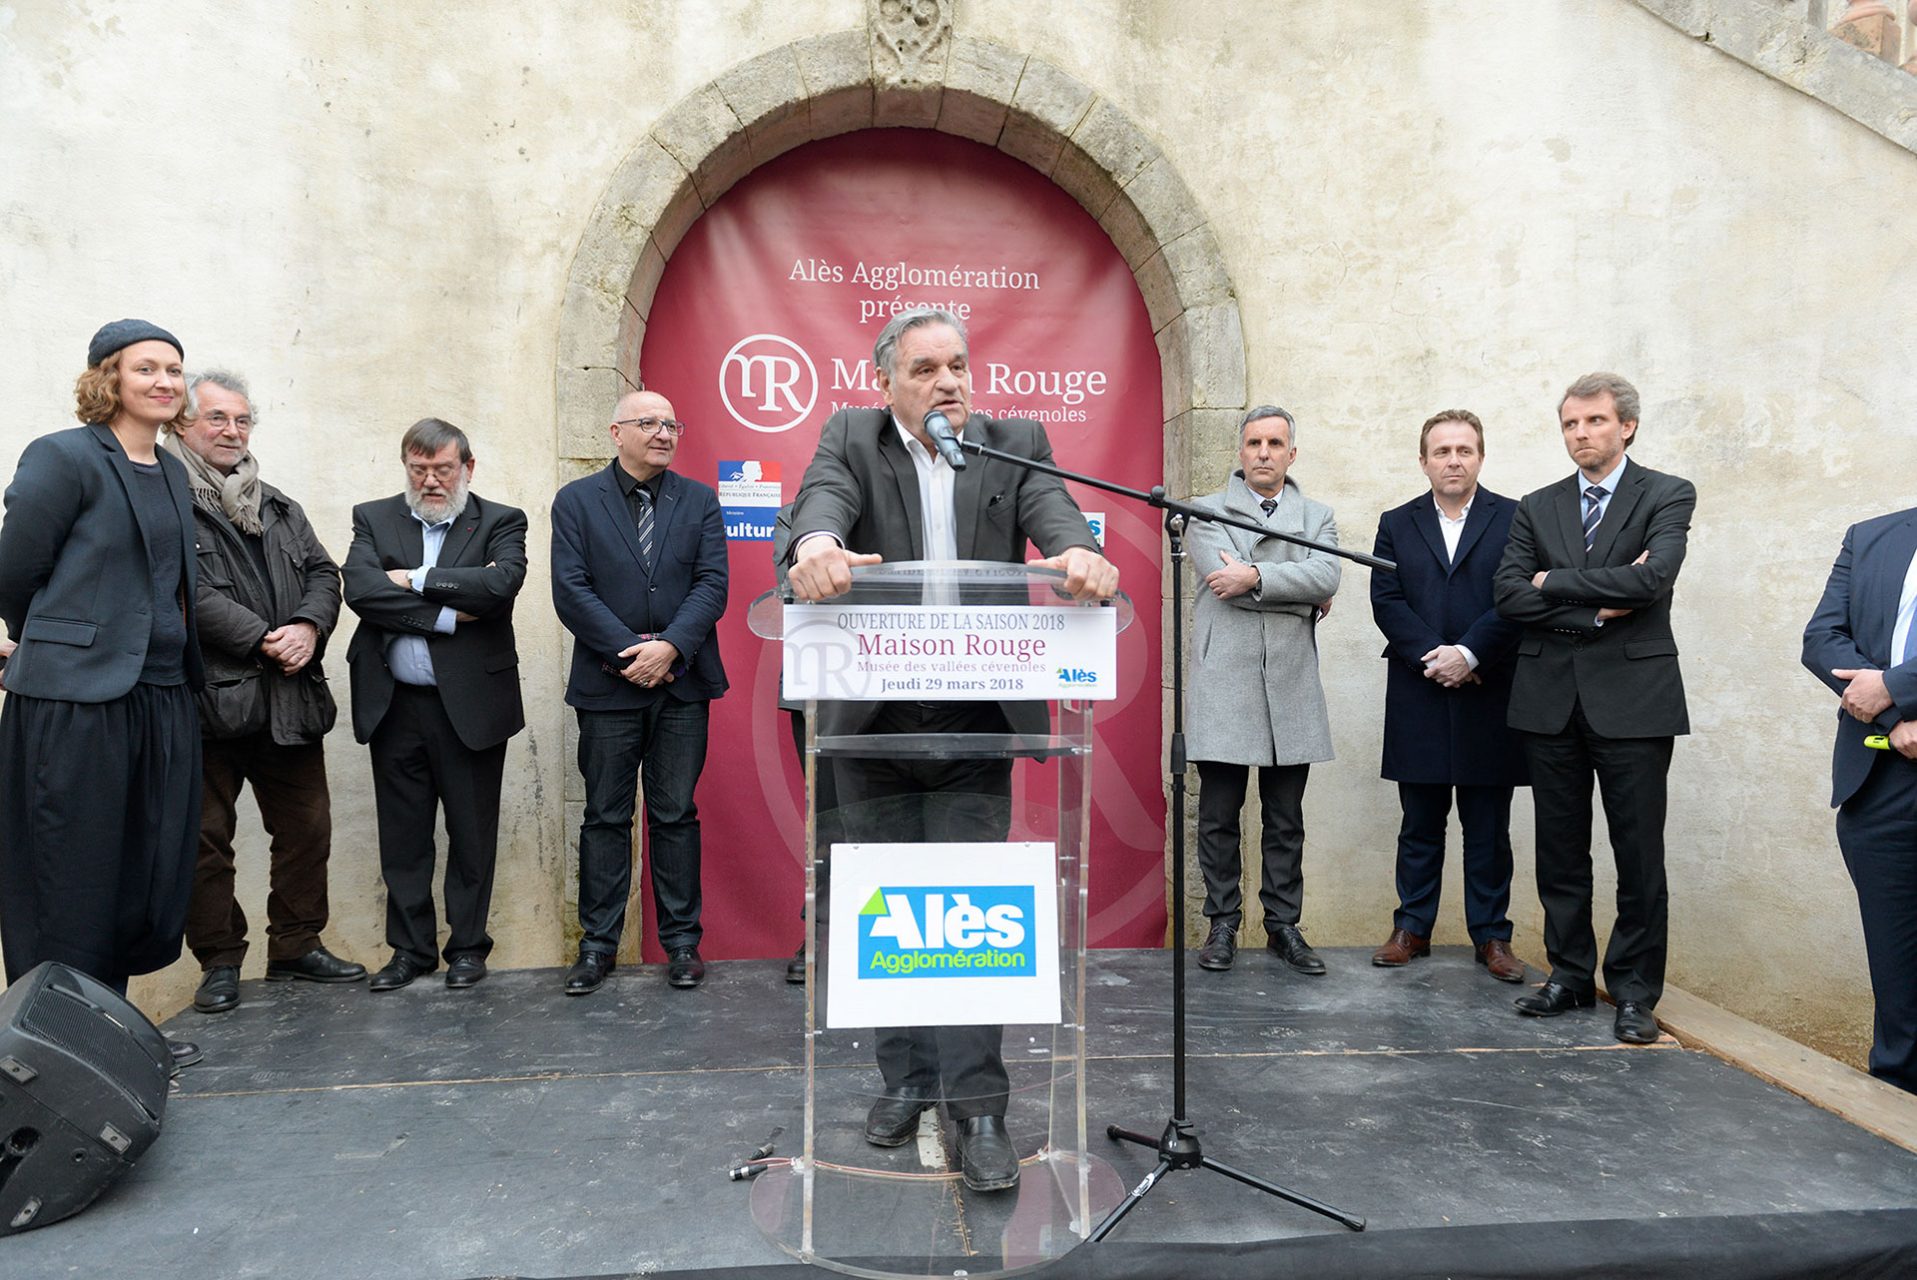 Max Roustan, président d'Alès Agglo, a lancé la première saison de Maison Rouge - Musée des vallées cévenoles ce jeudi 29 mars.